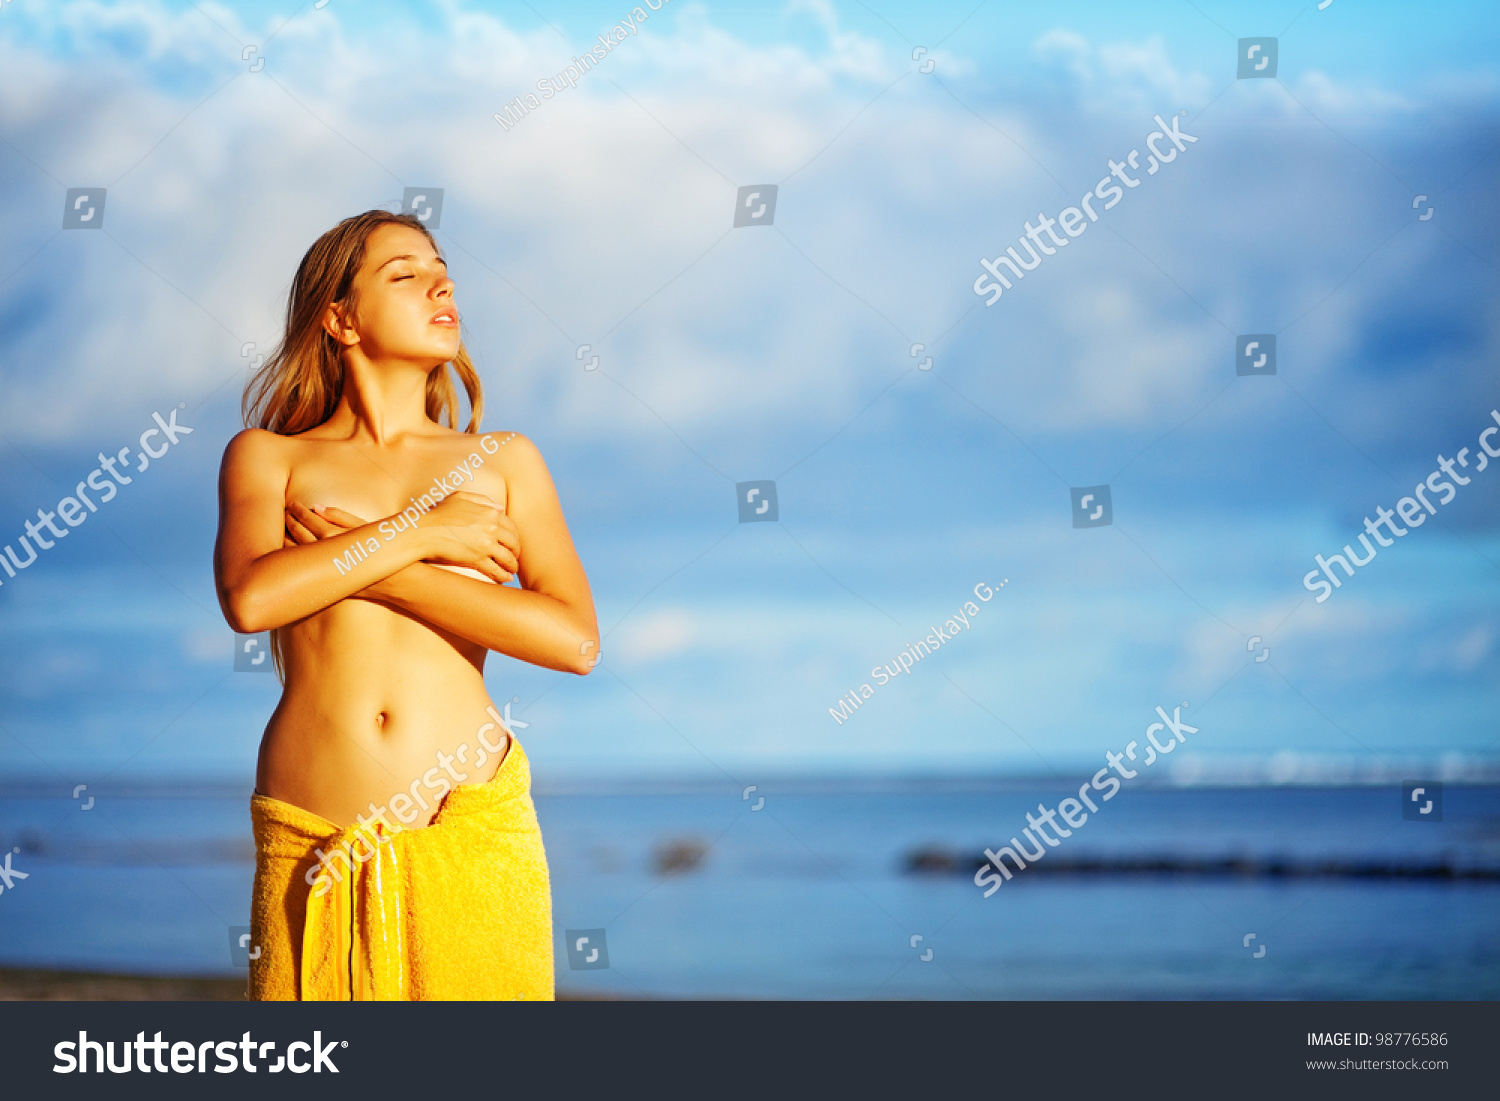 Nude Women On Beach